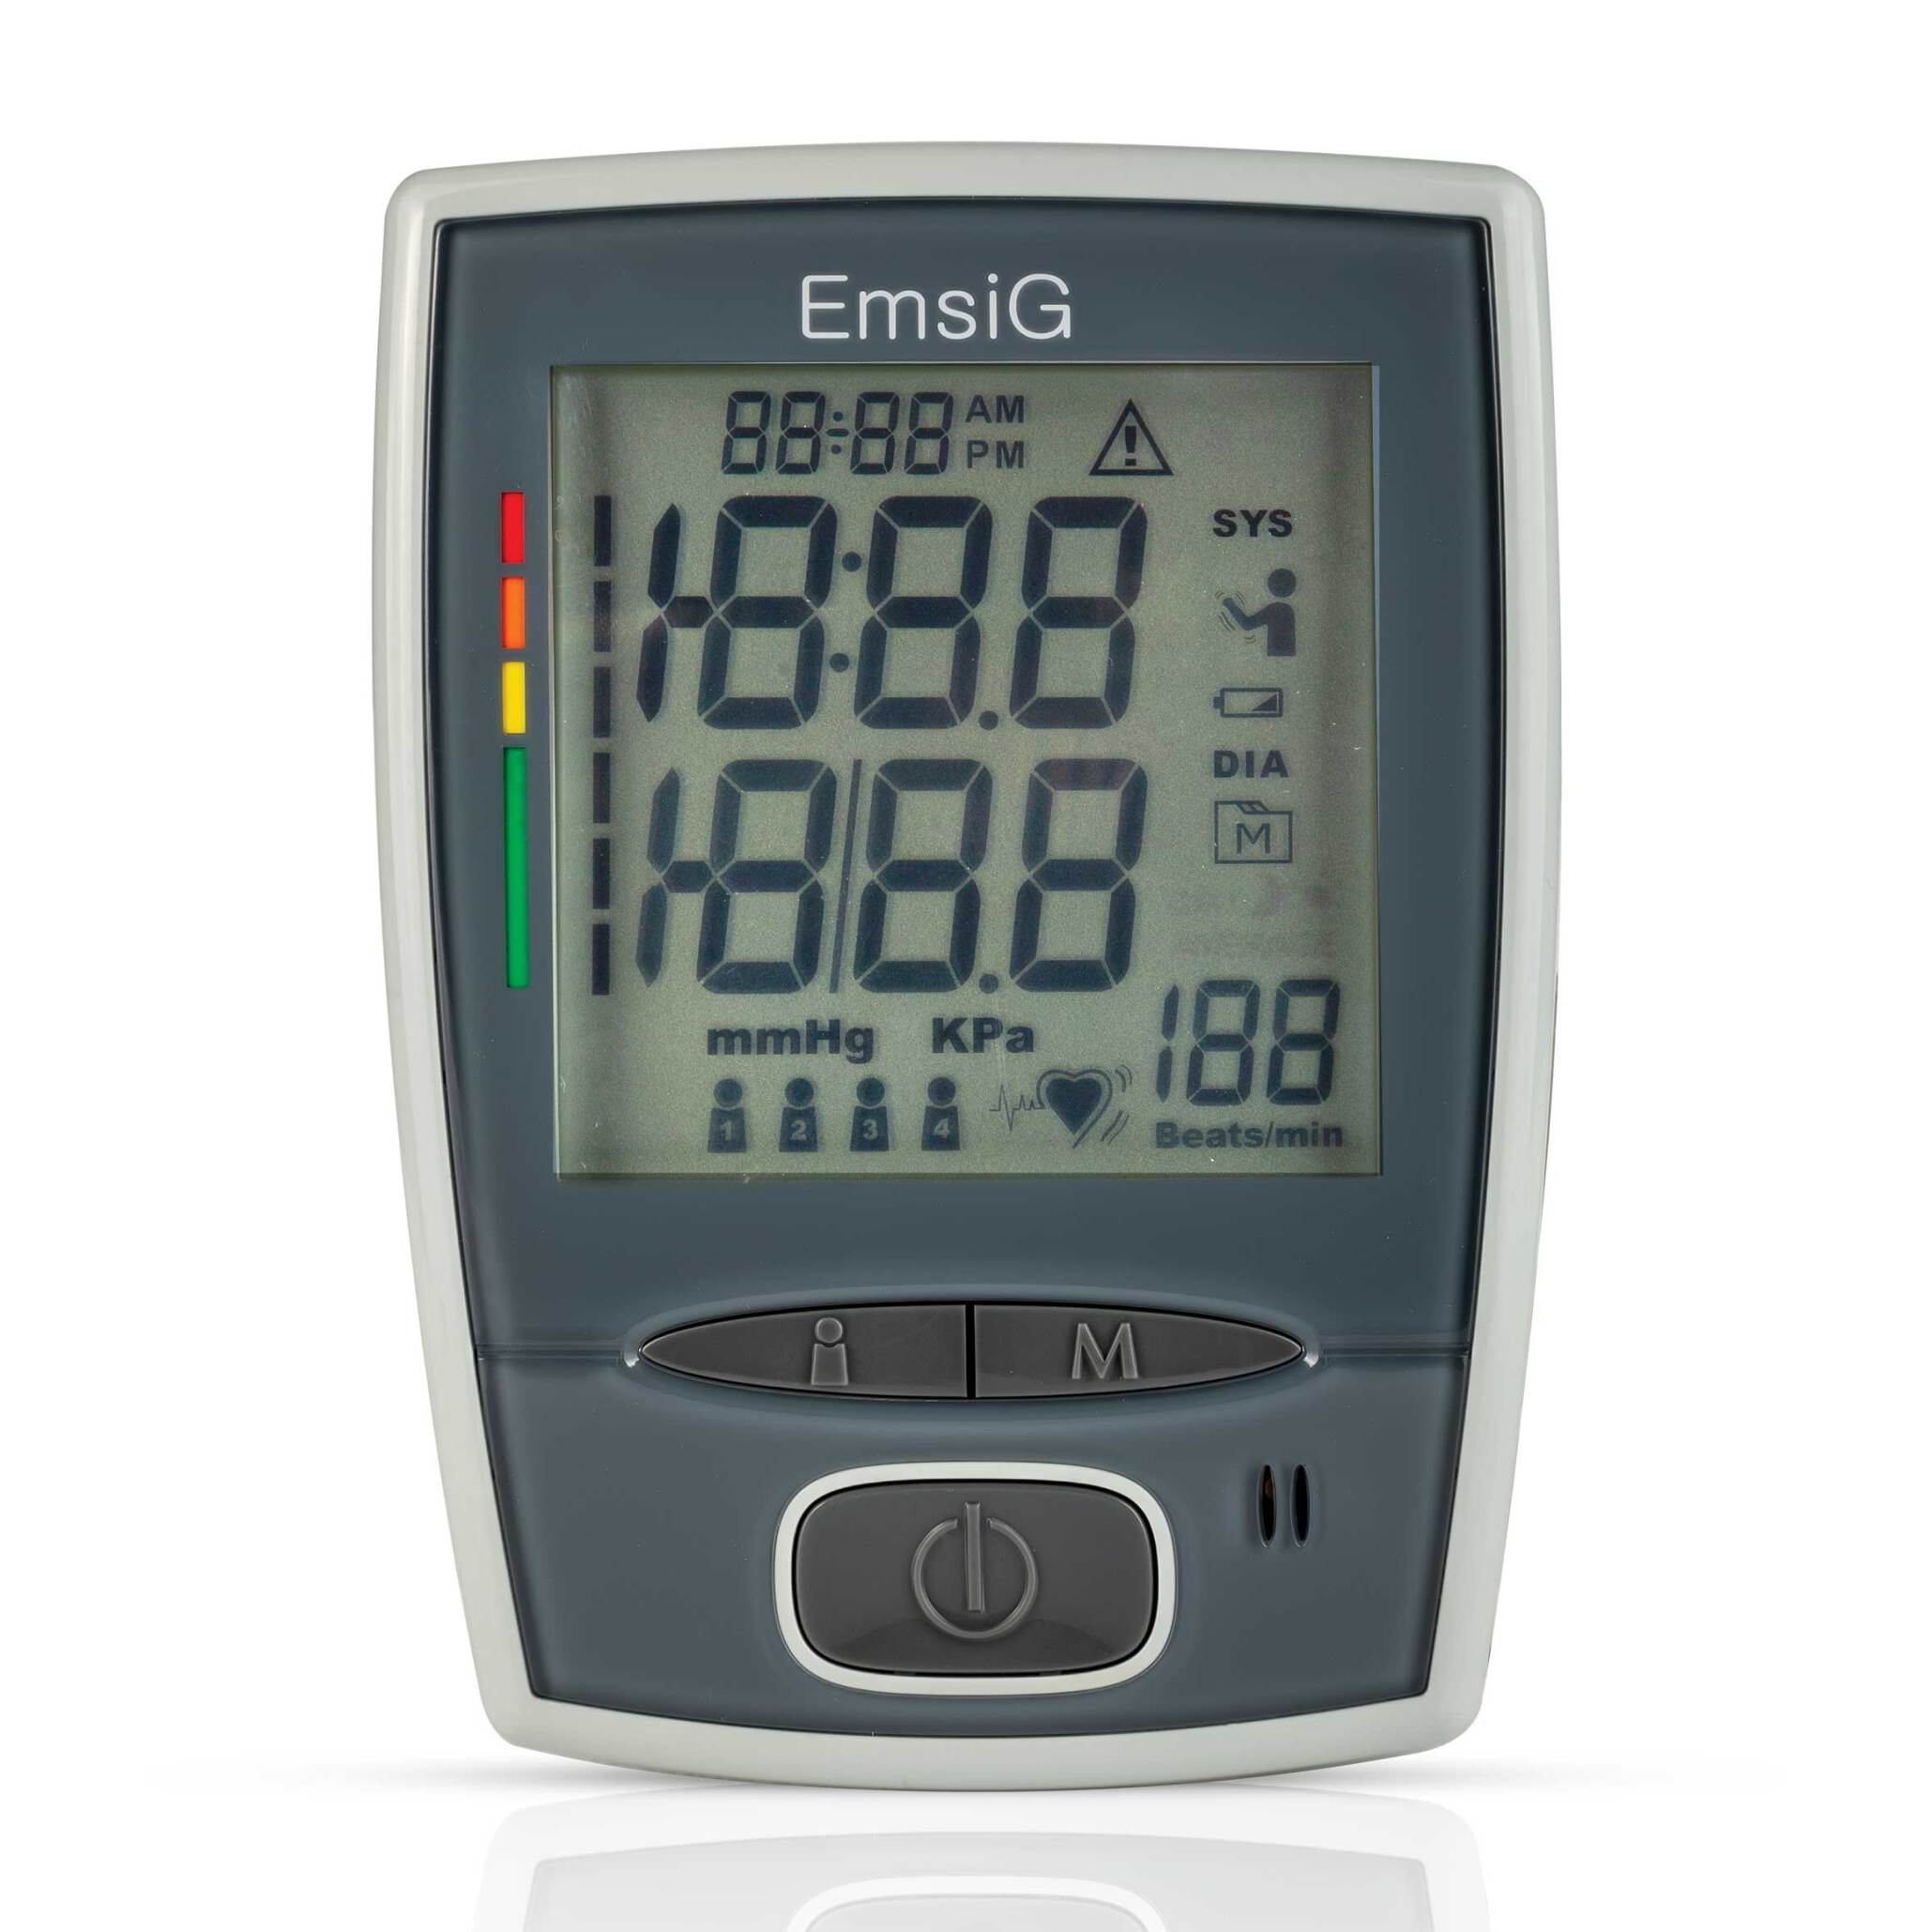  خرید فشارسنج دیجیتال امسیگ (Emsig) مدل BO26 